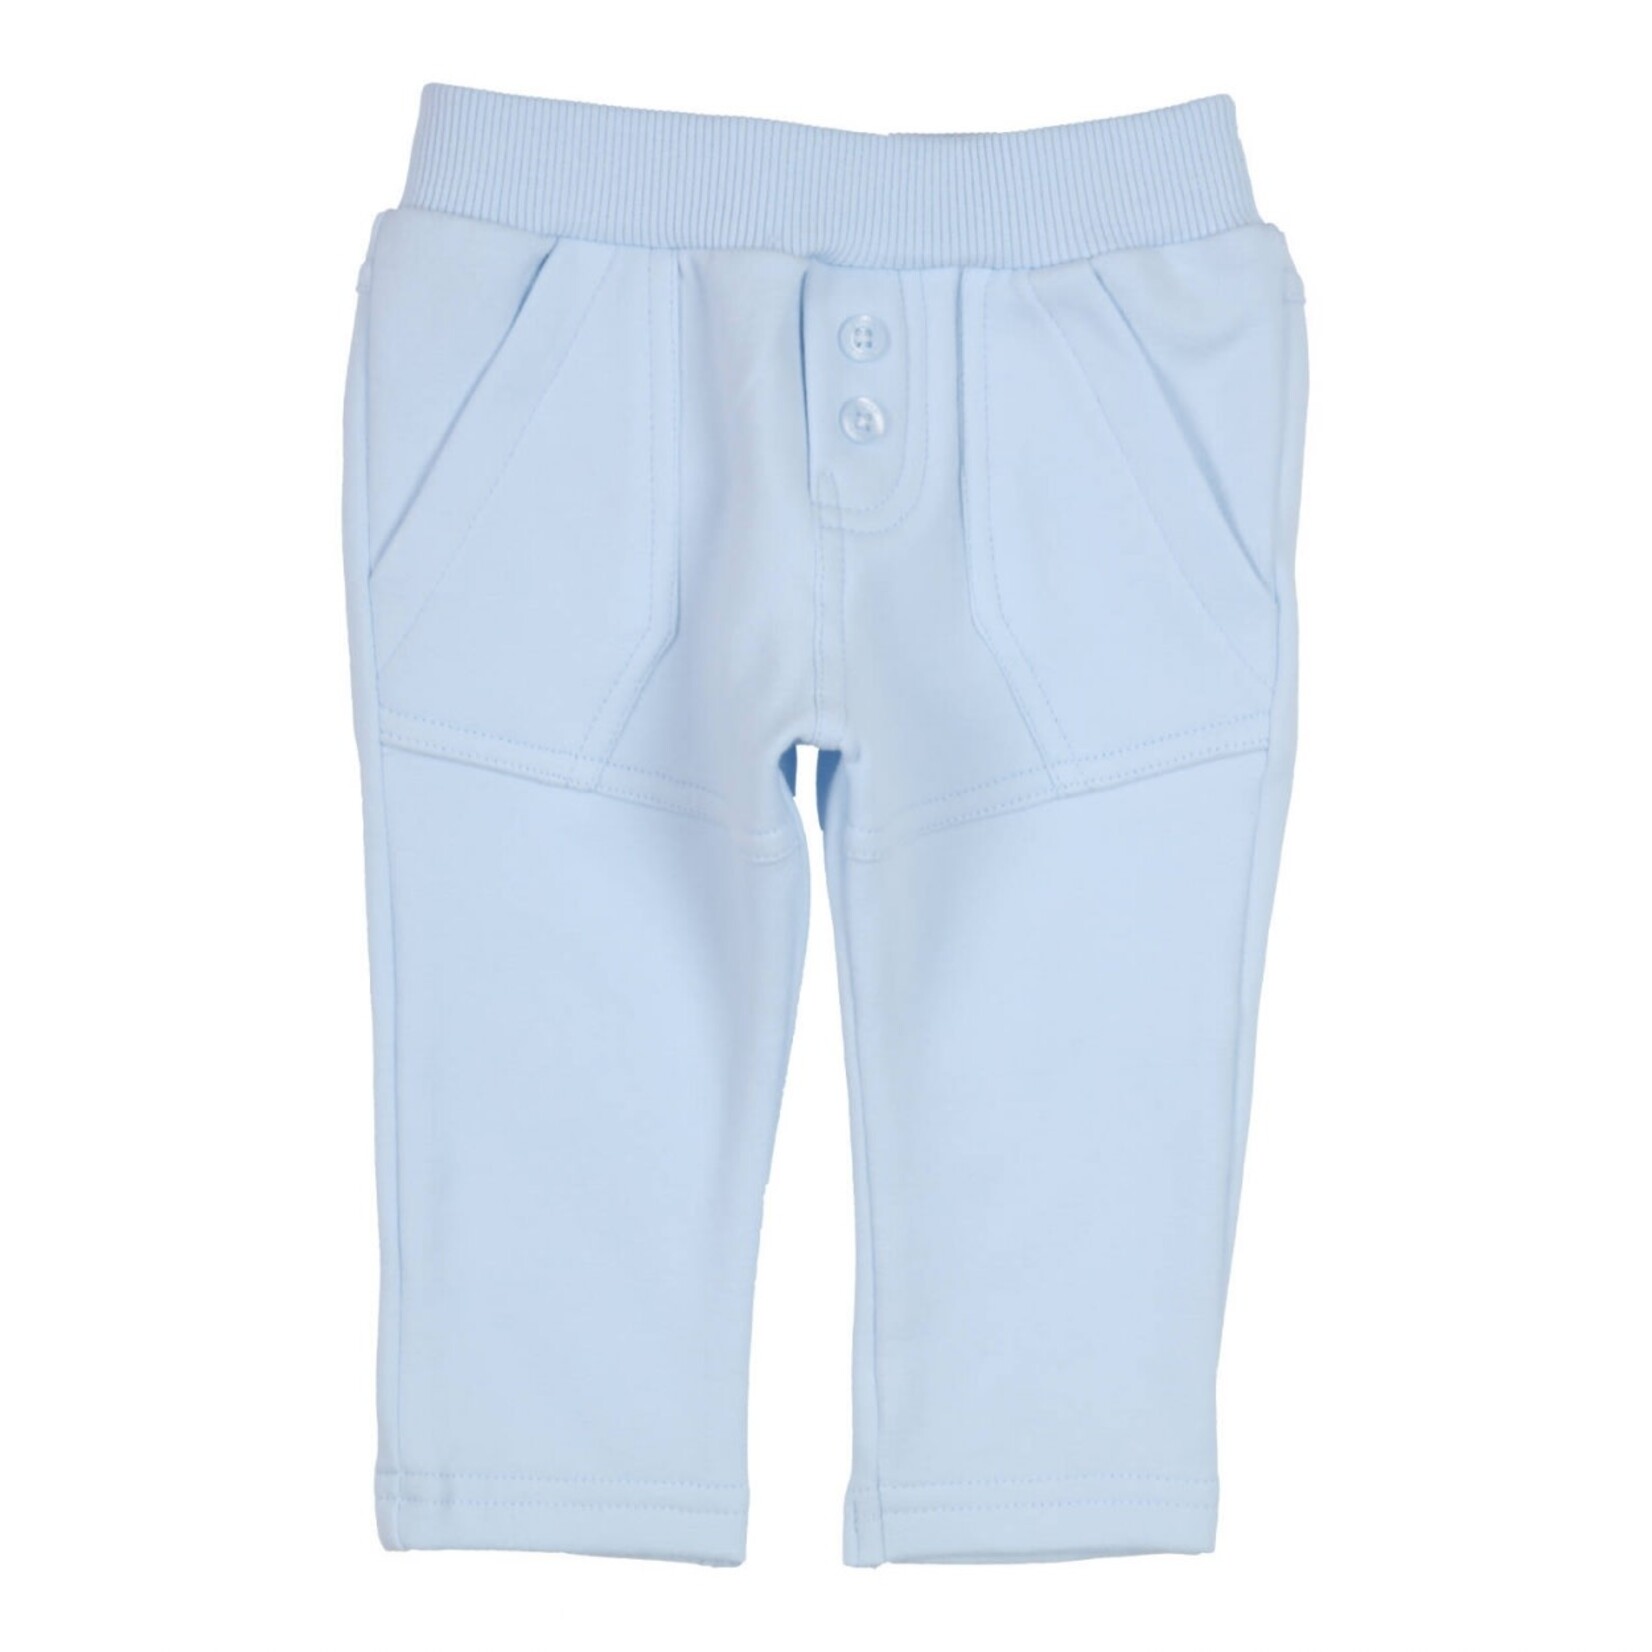 Gymp Trousers Carbondoux_Light Blue